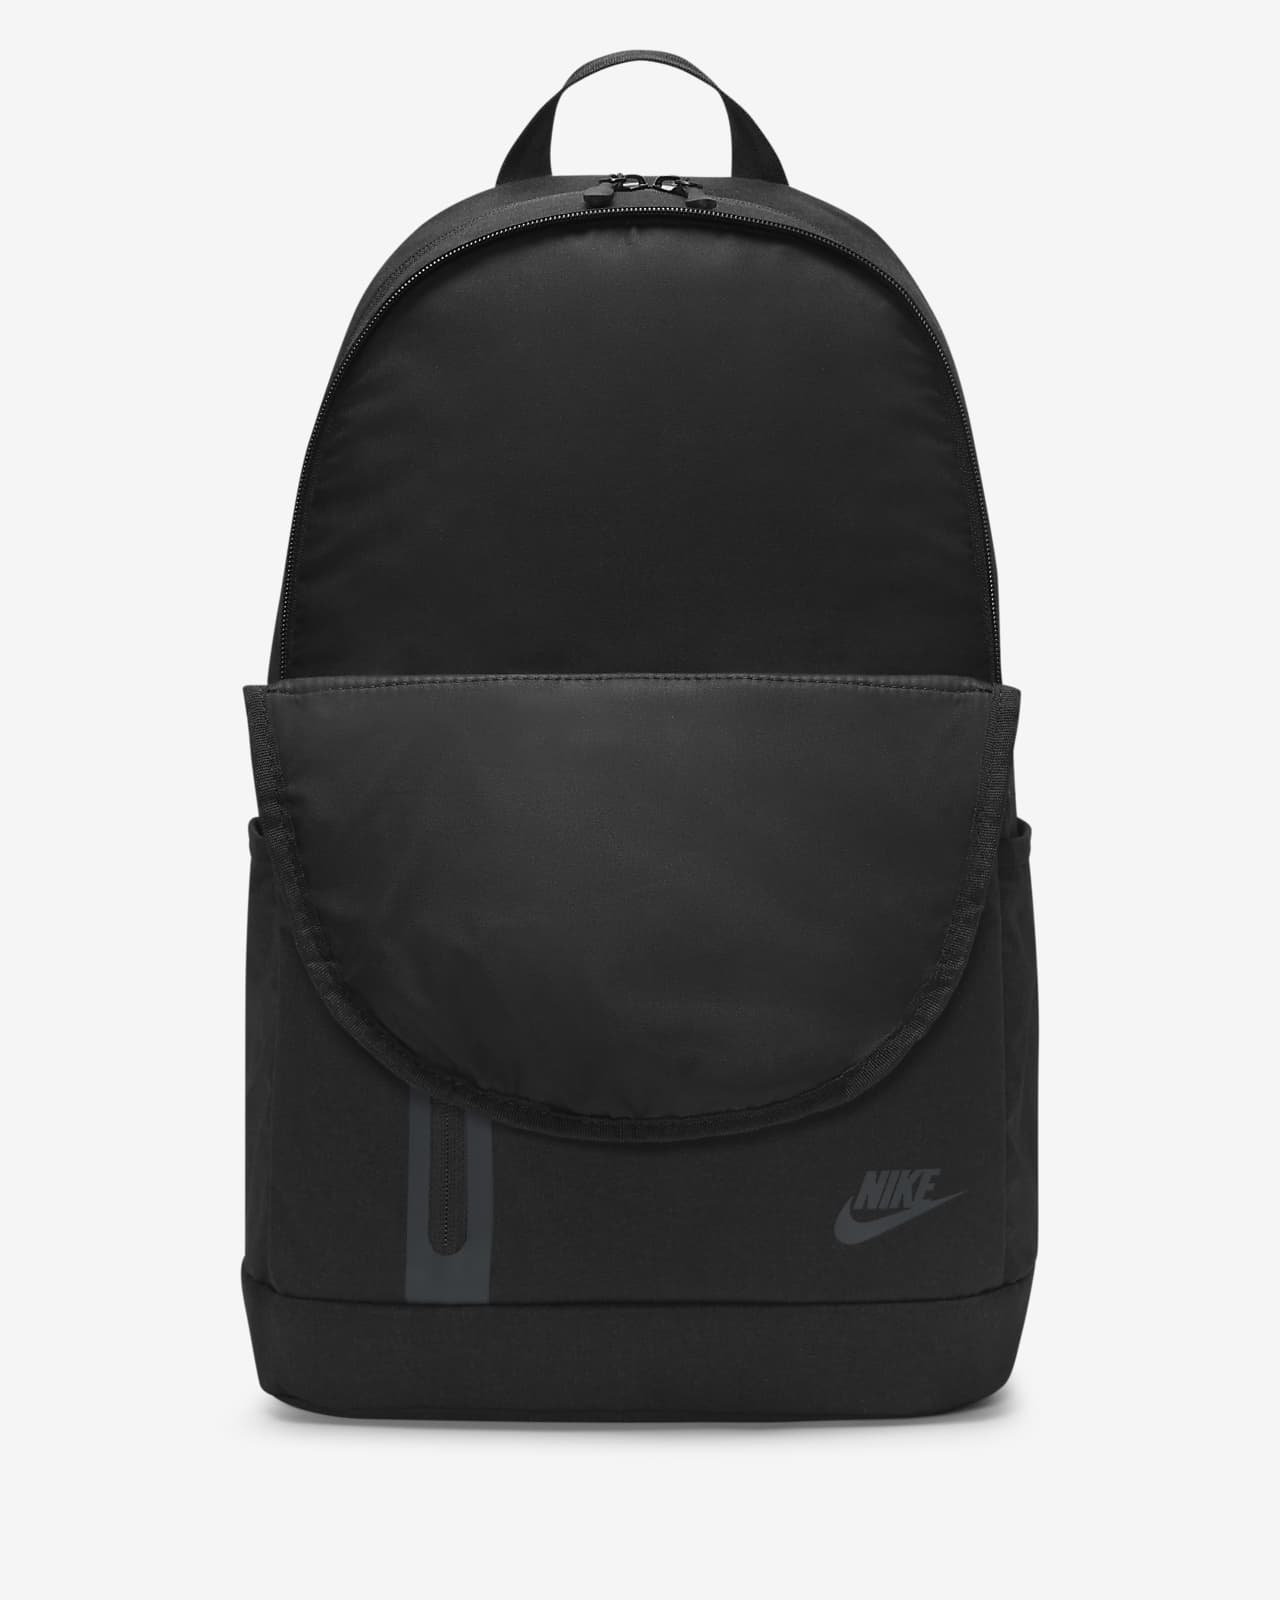 Plecak Nike Premium l). Nike PL